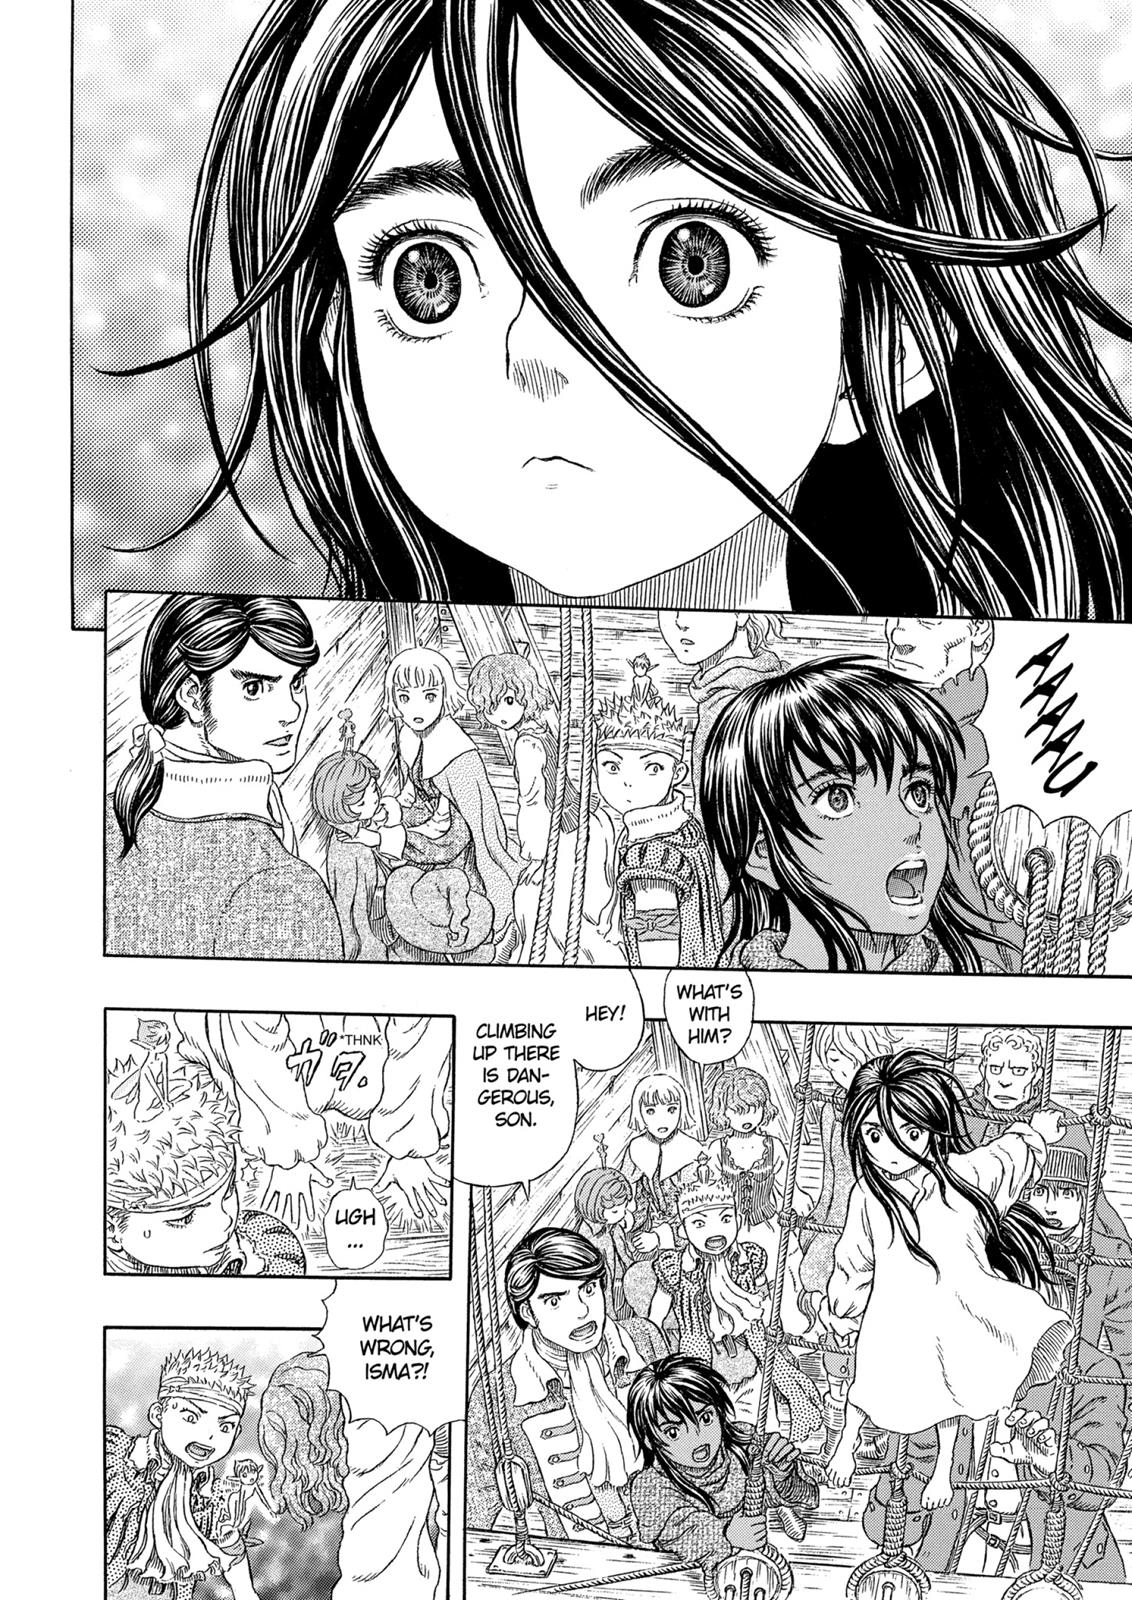 Berserk Manga Chapter 322 image 15